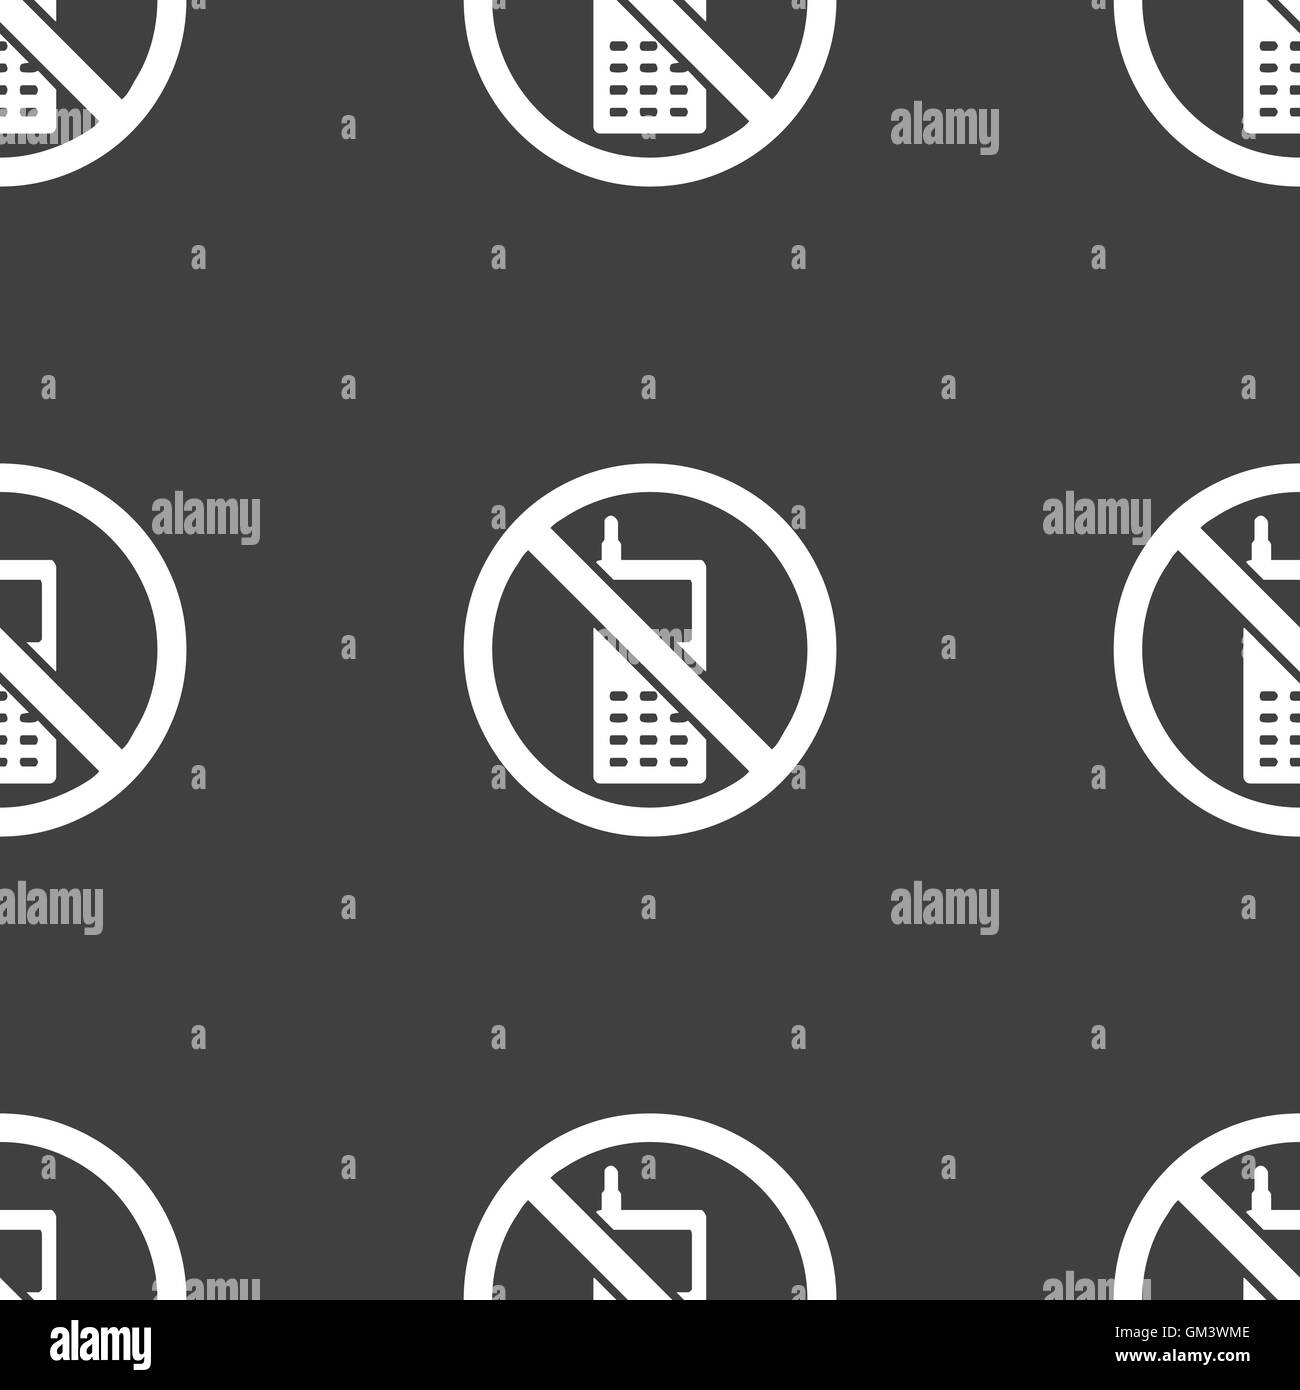 L'icône de téléphone mobile est interdite. Motif transparente sur un fond gris. Vector Illustration de Vecteur